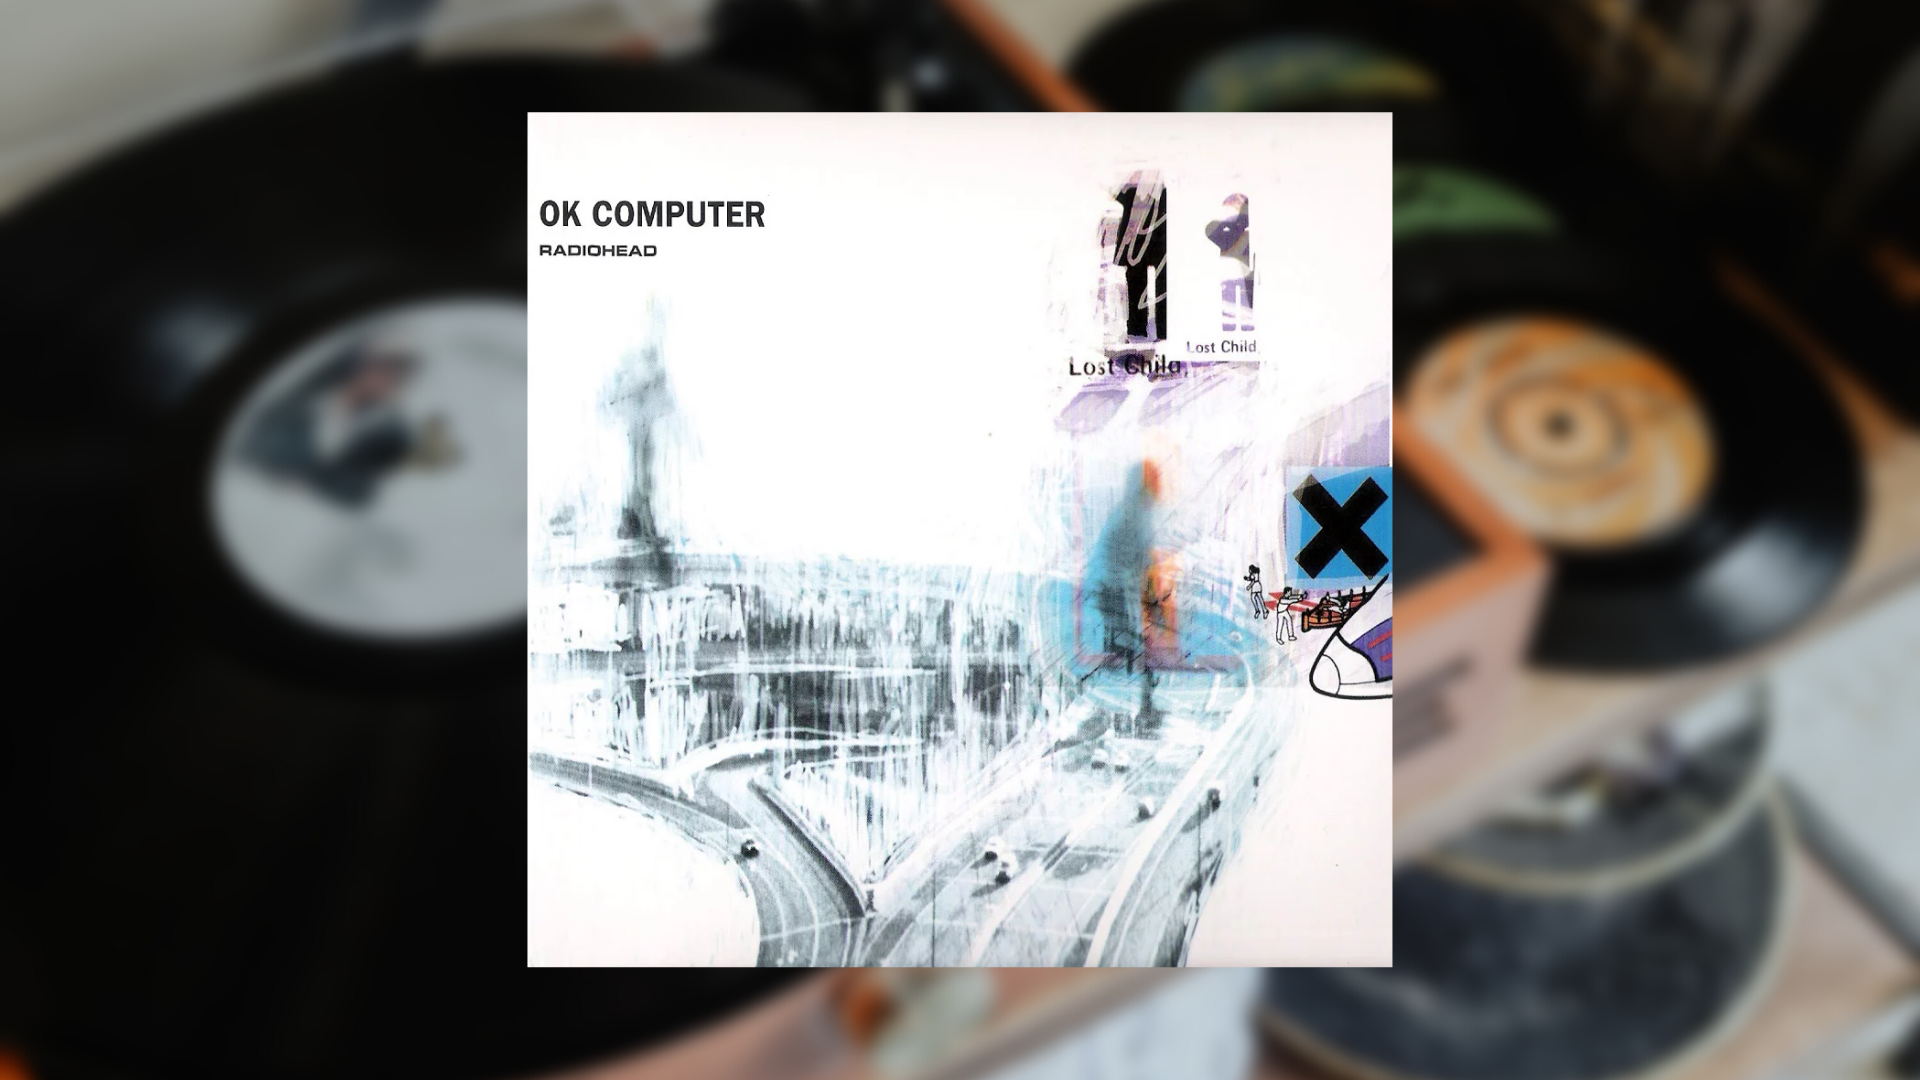 25 años de “OK Computer” de Radiohead, el último disco trascendente del rock